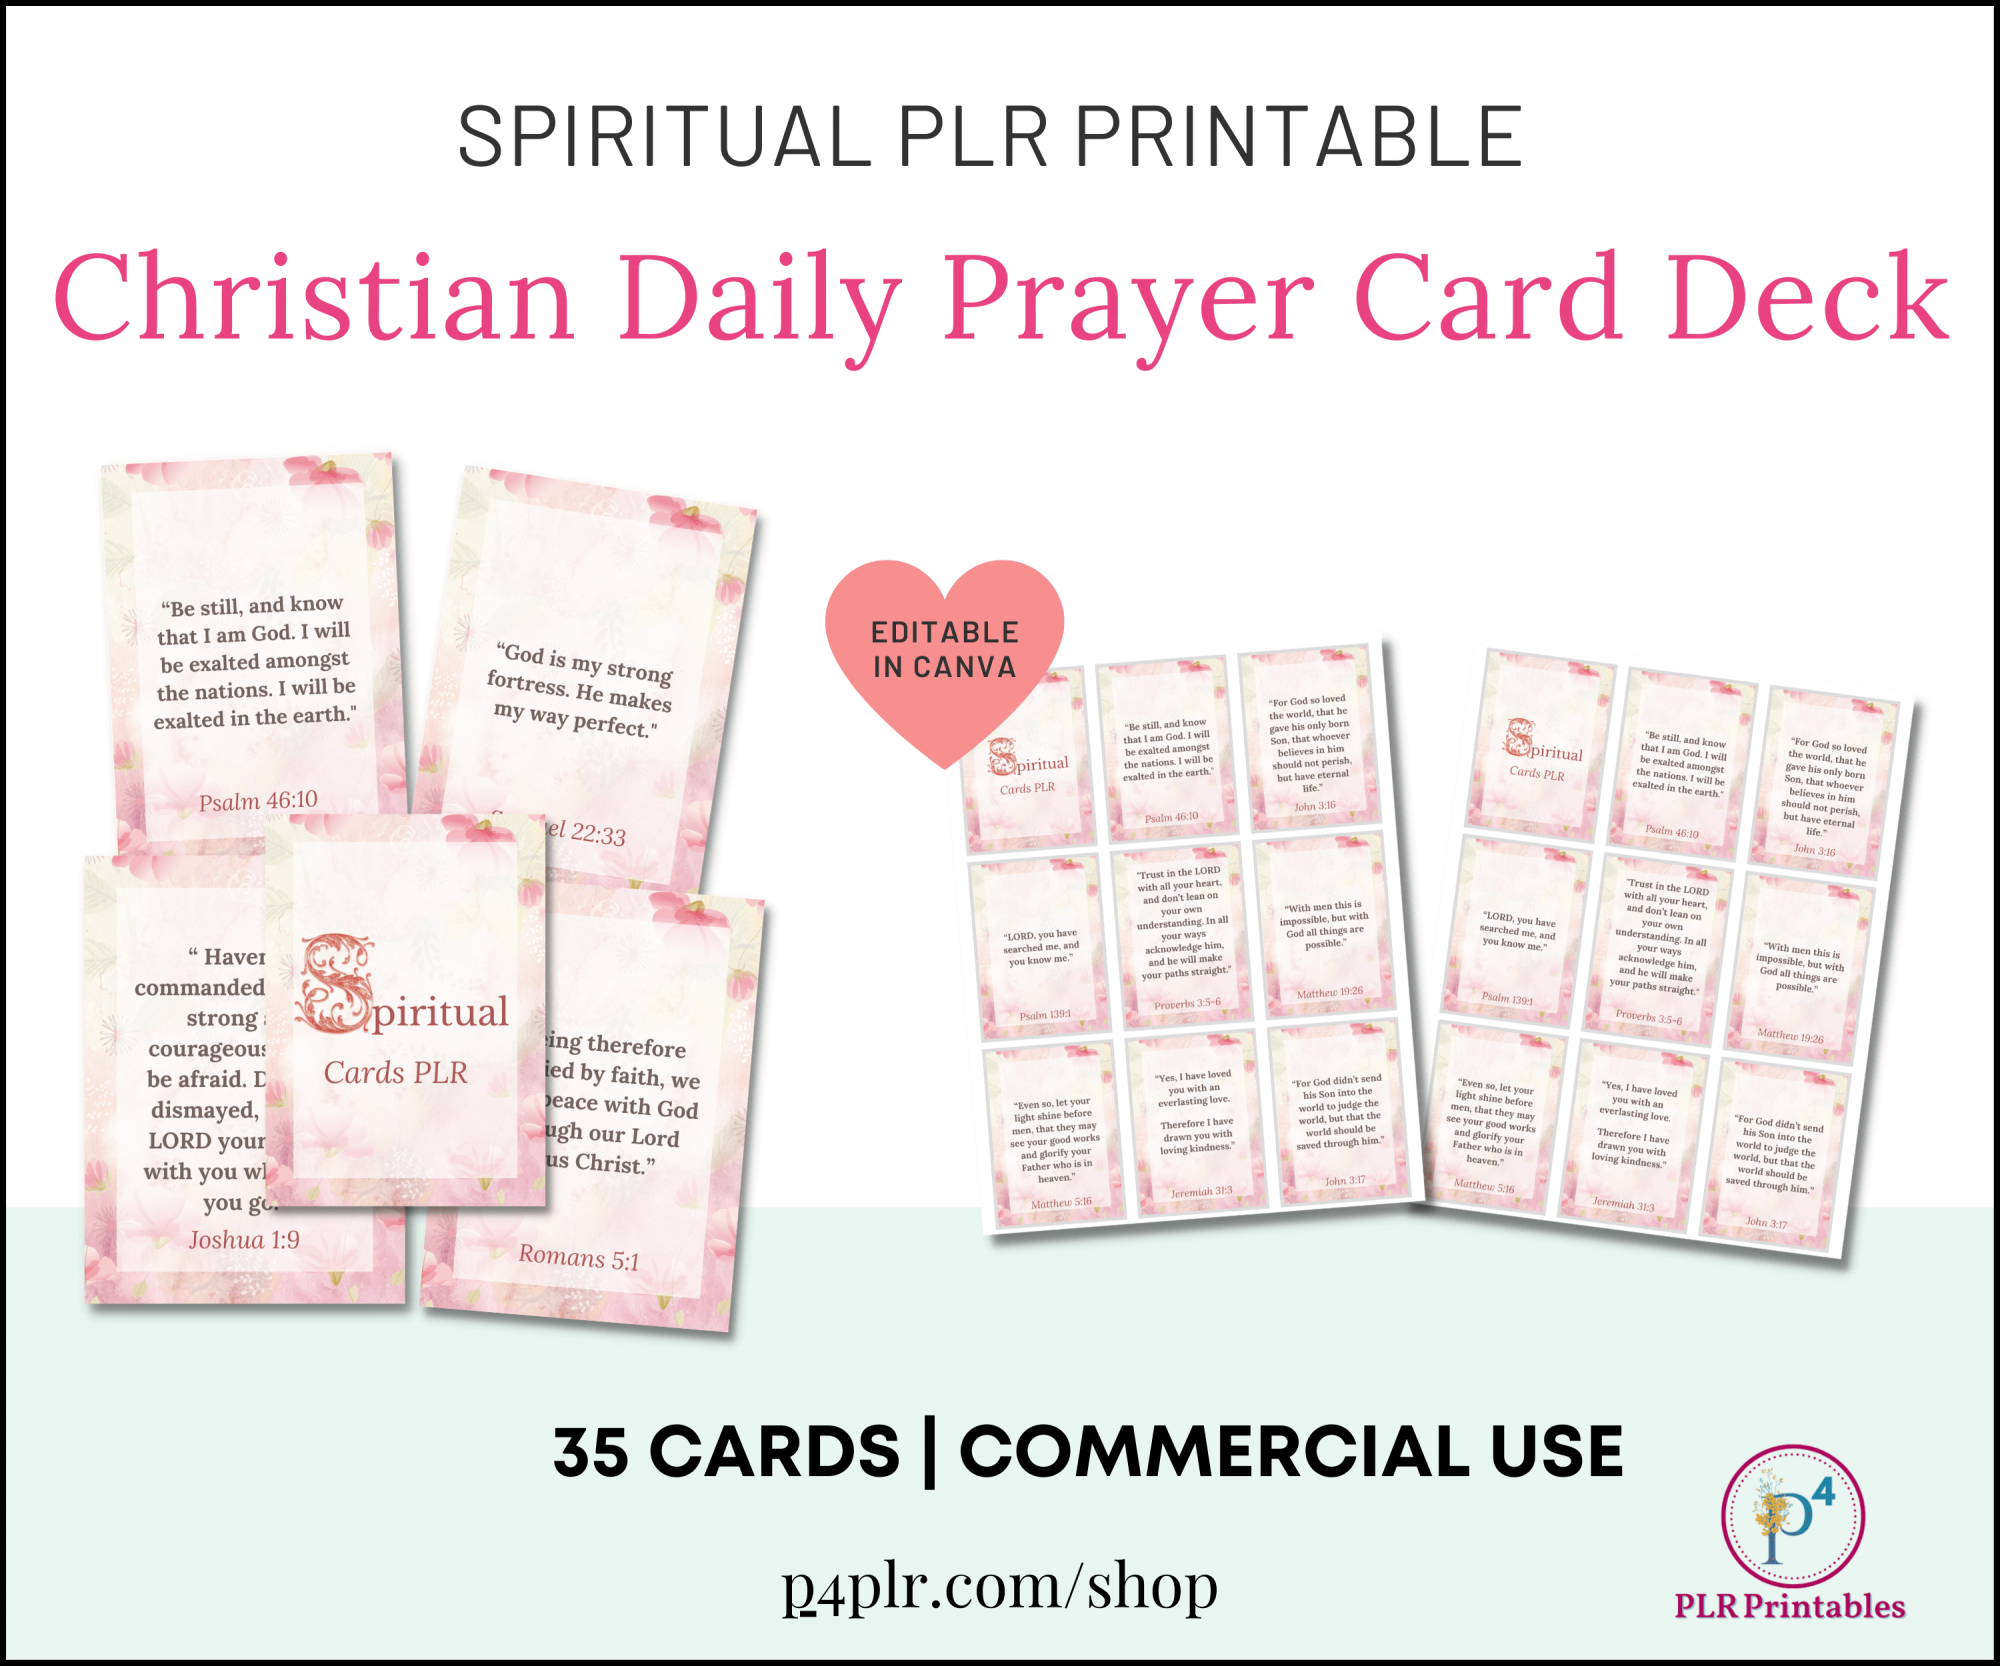 Spiritual Cards PLR for Daily Prayer